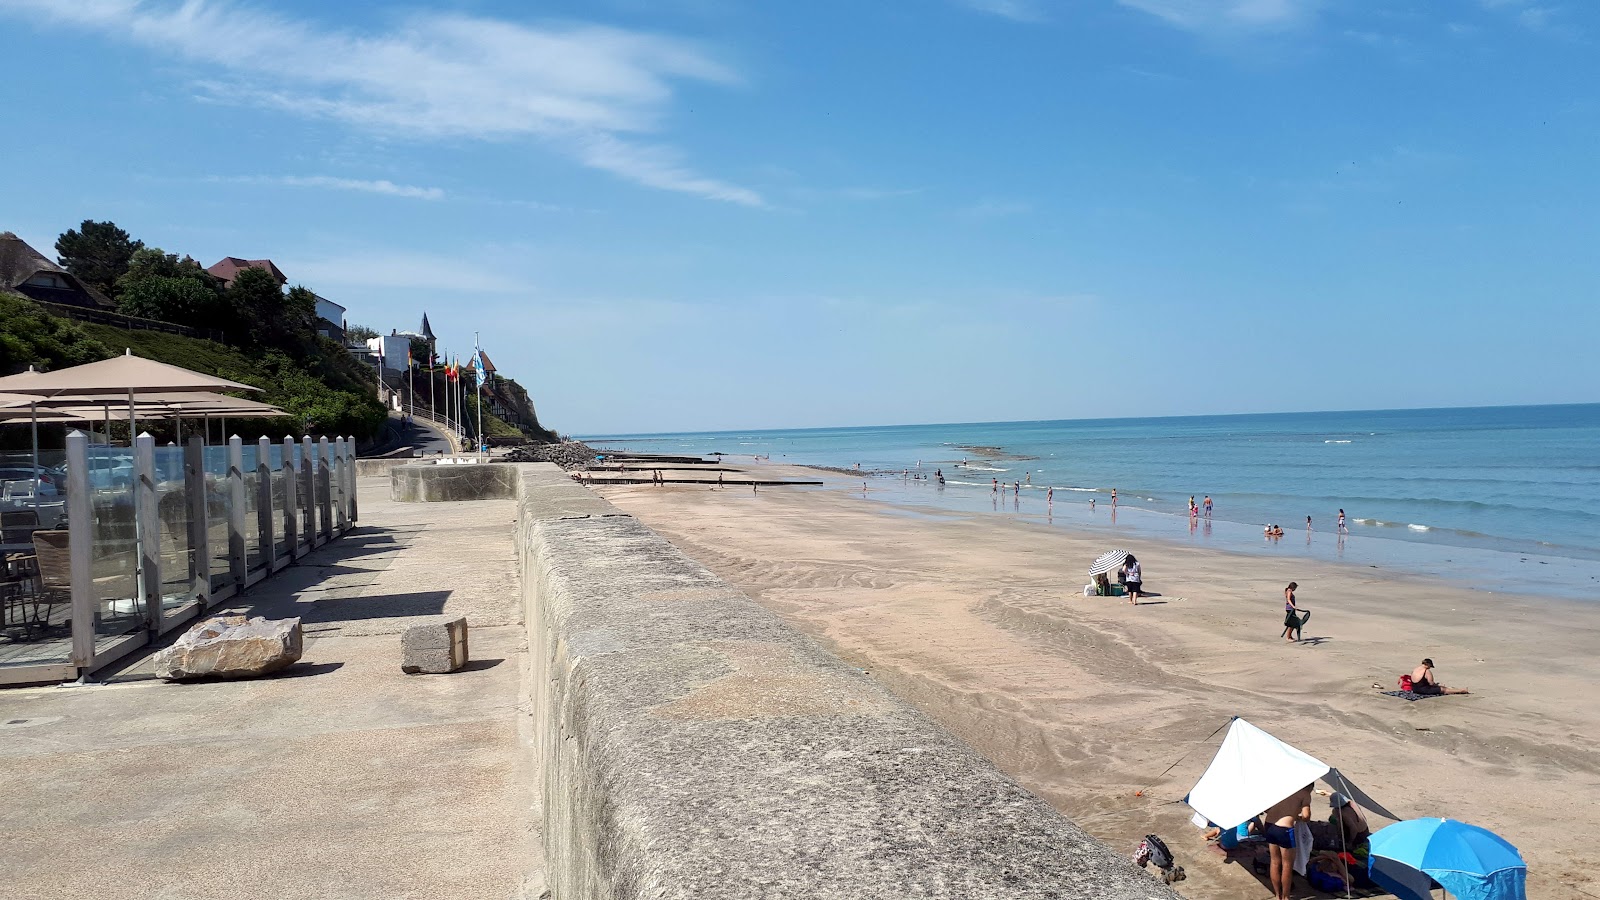 Villerville Plajı'in fotoğrafı çok temiz temizlik seviyesi ile